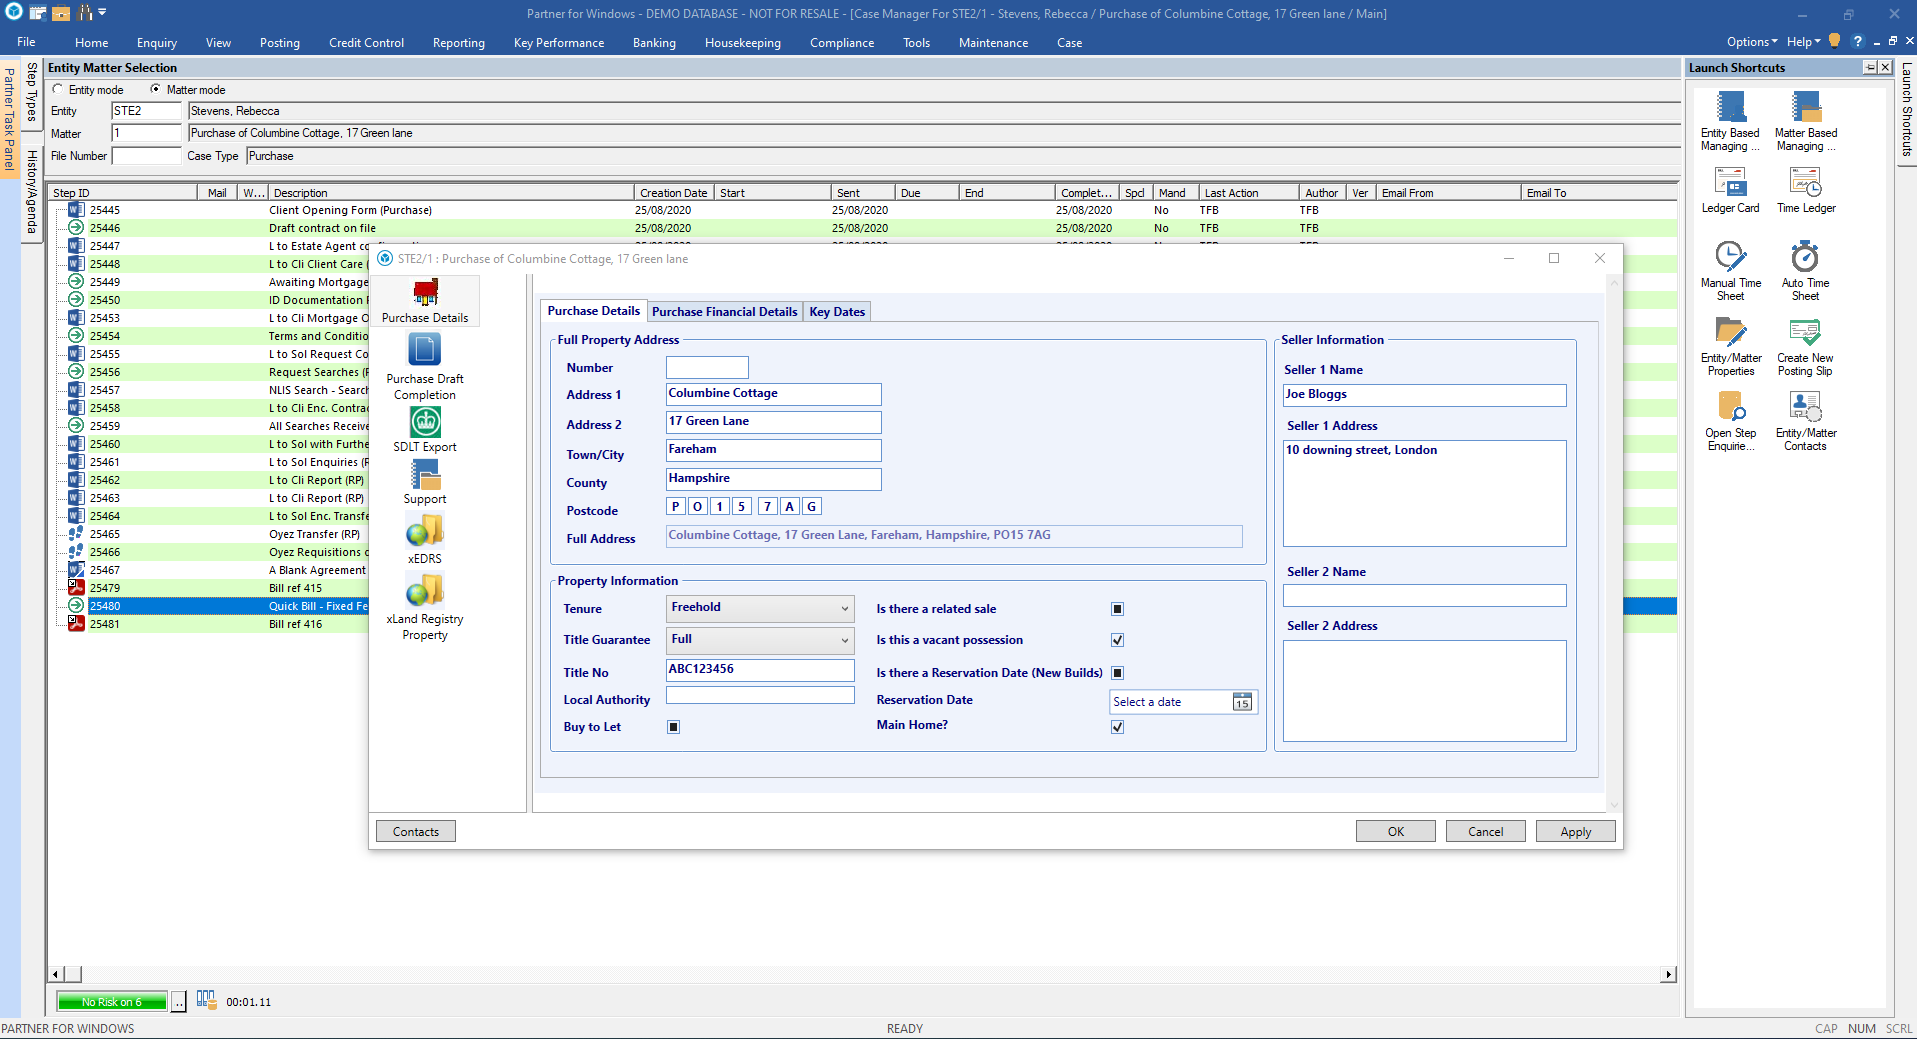 P4W Case Management Desktop Tab Feature